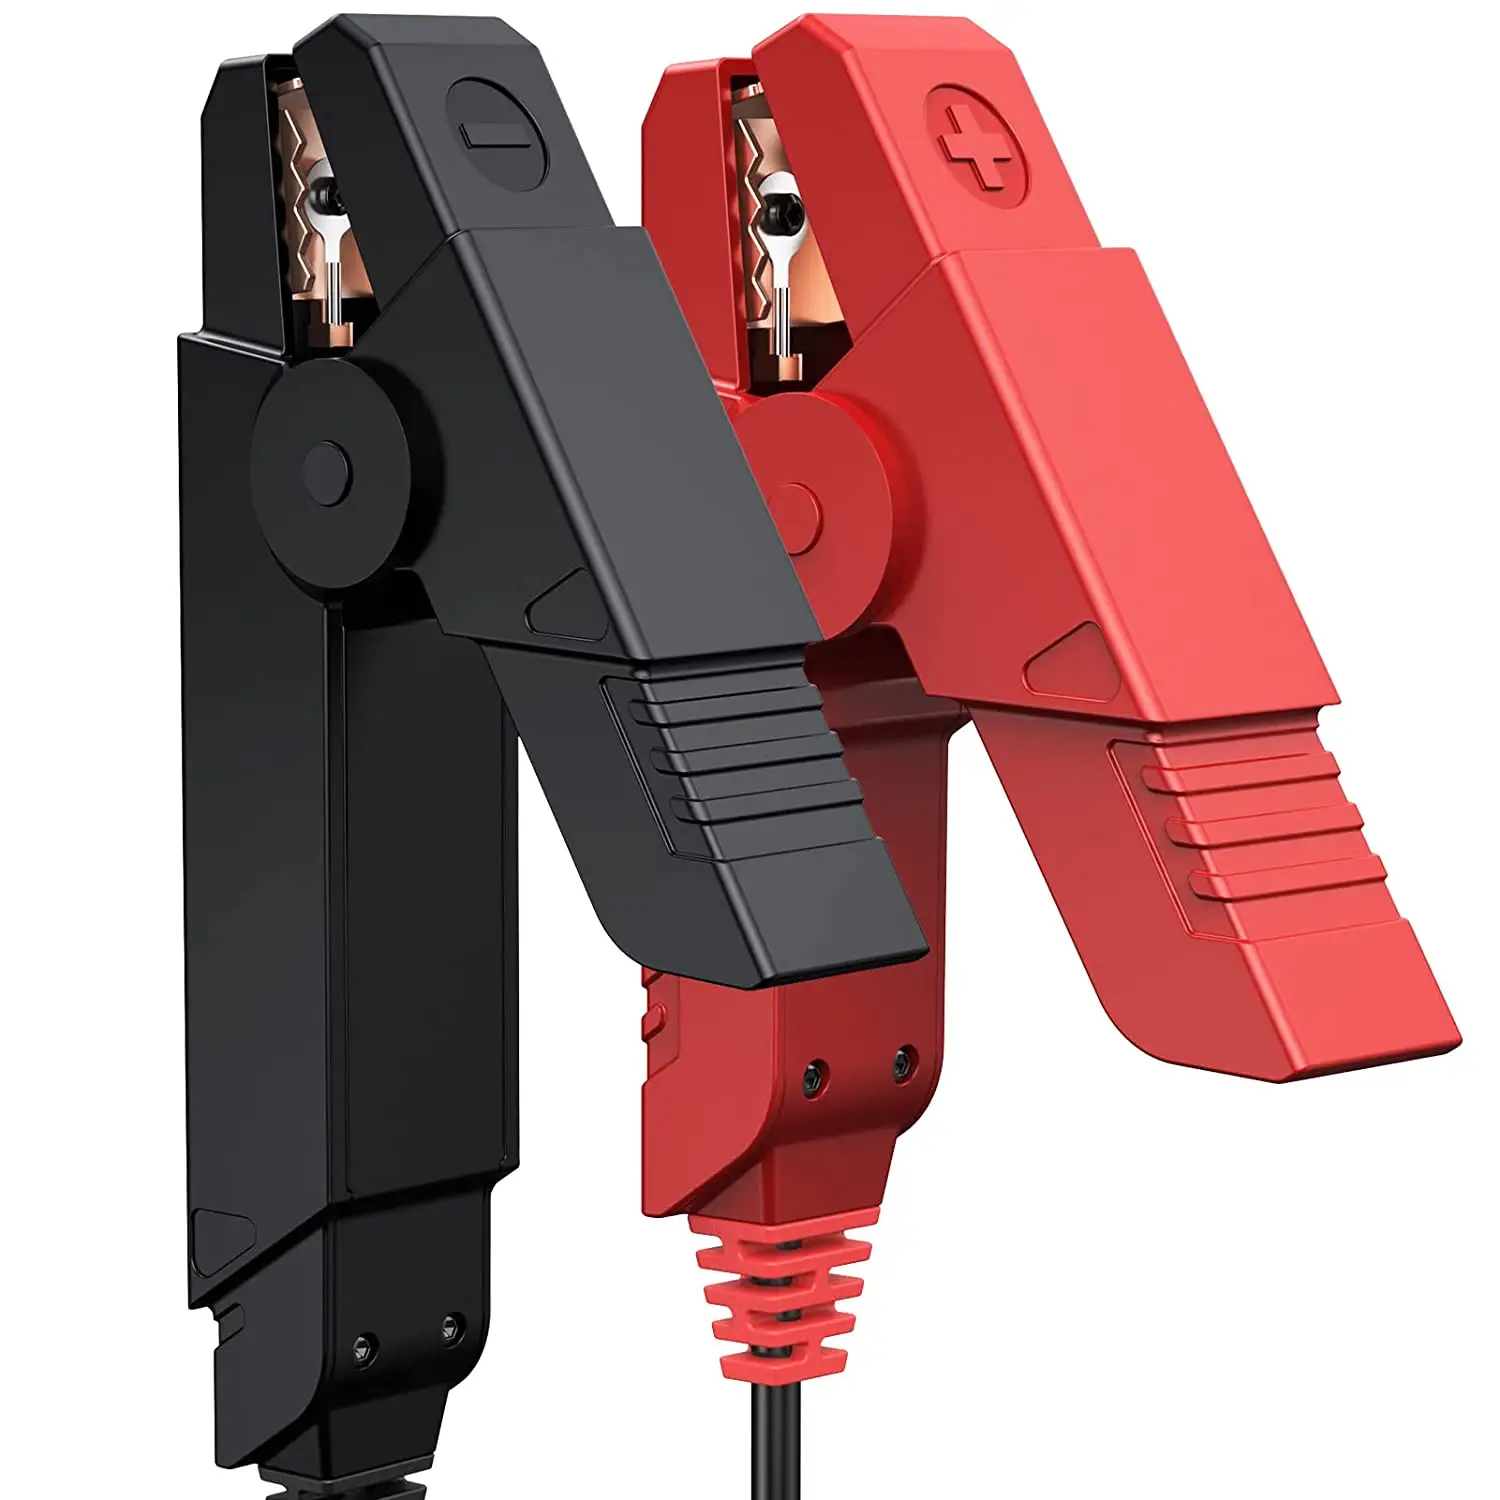 Khởi động BST-360 Pin kiểm tra Clip phân tích 6V 12V 2000cca Điện áp Tester cho x431 V + V pro3s + Pad V bst360 BT Pin Tester